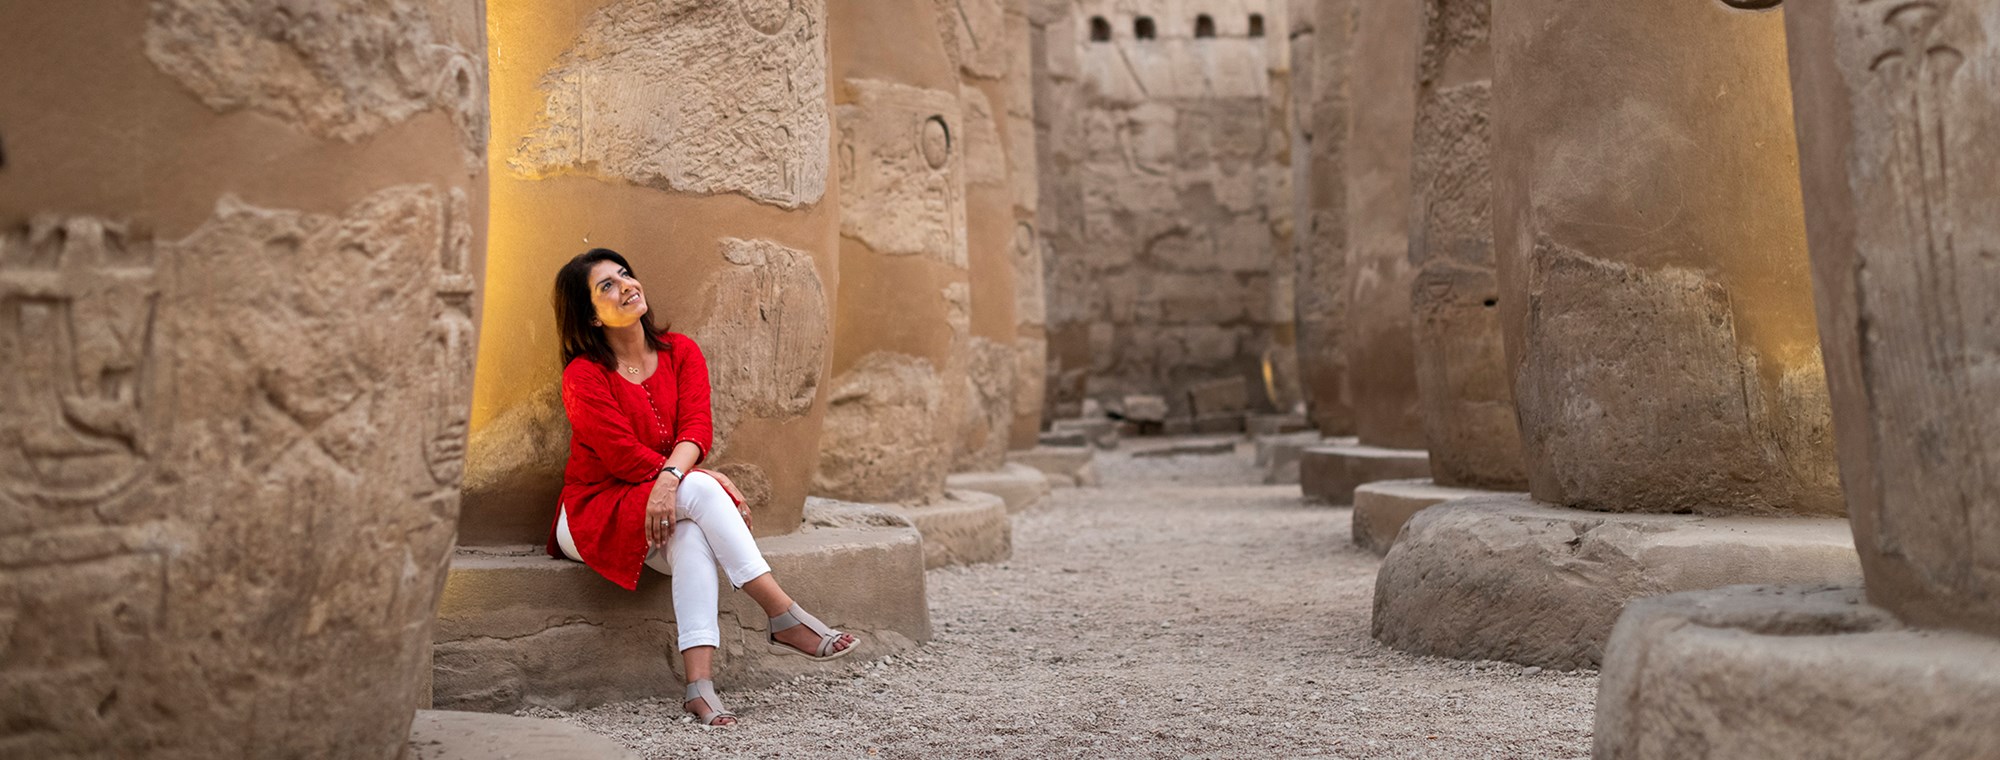 Egypt Luxor Karnak Temple Woman Solo Female Traveler